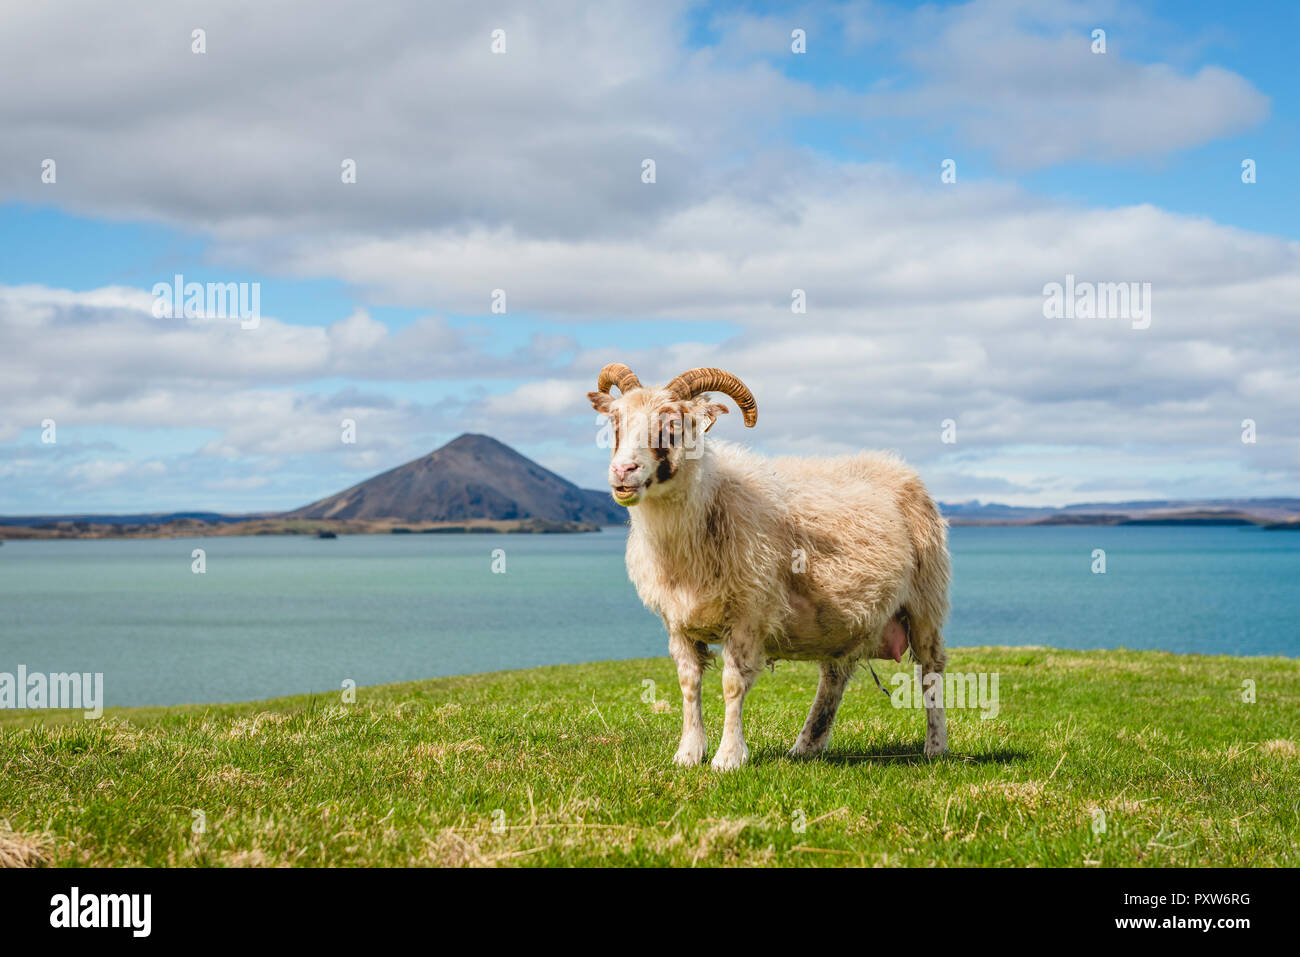 Iceland, Lake Myvatn, Sheep Stock Photo